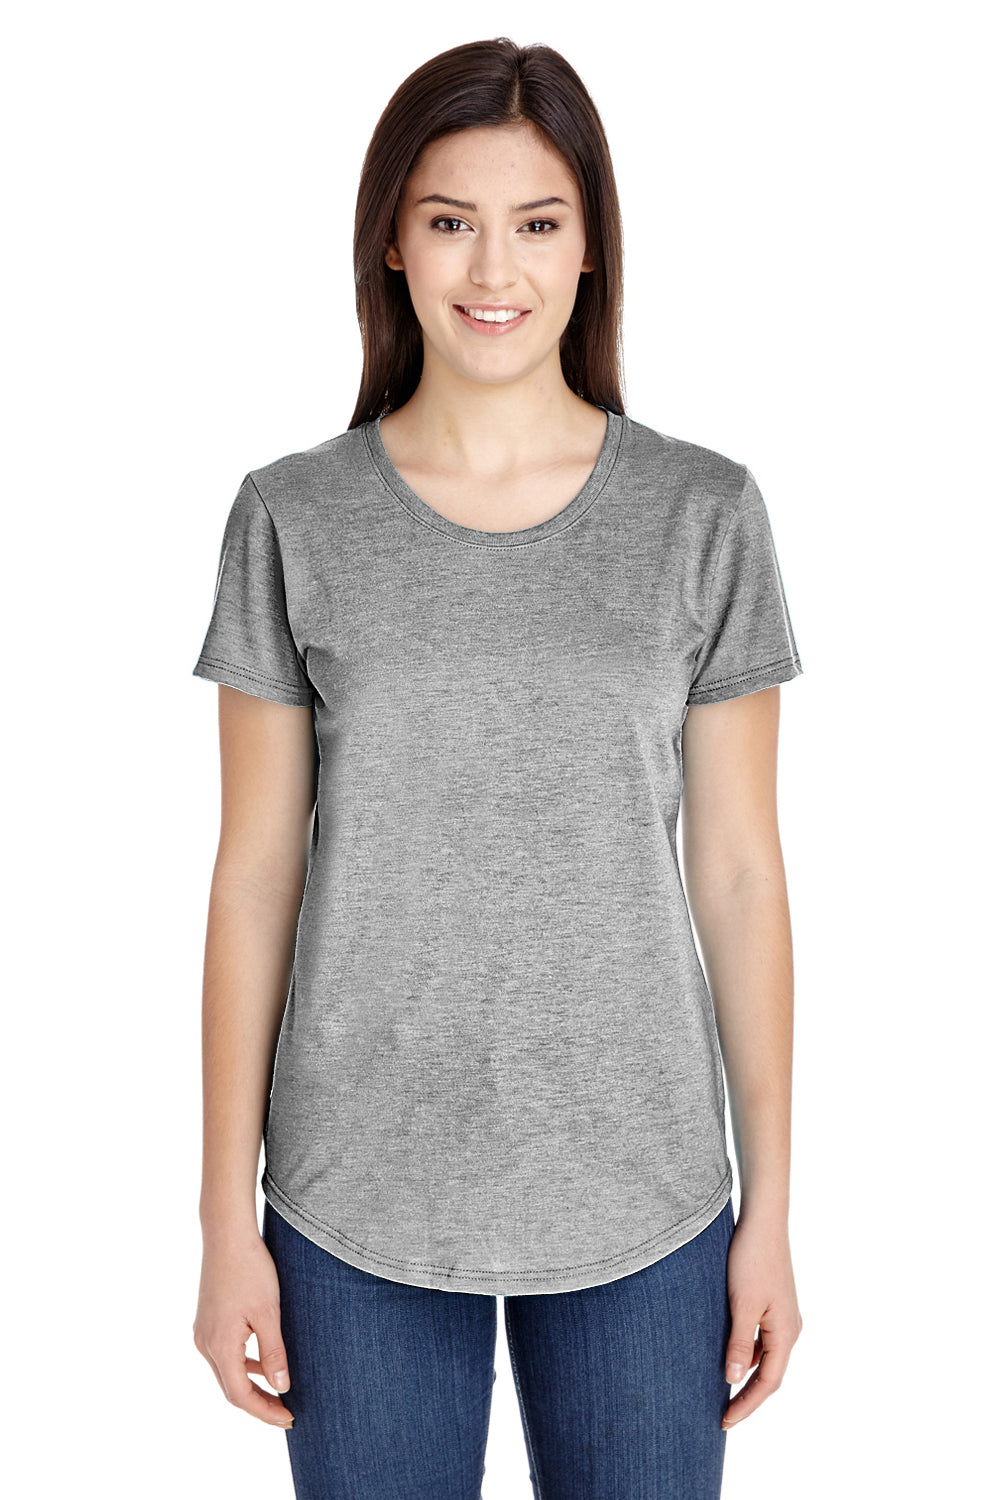 Anvil Womens Short Sleeve Crewneck T-Shirt 6750L - BigTopShirtShop.com